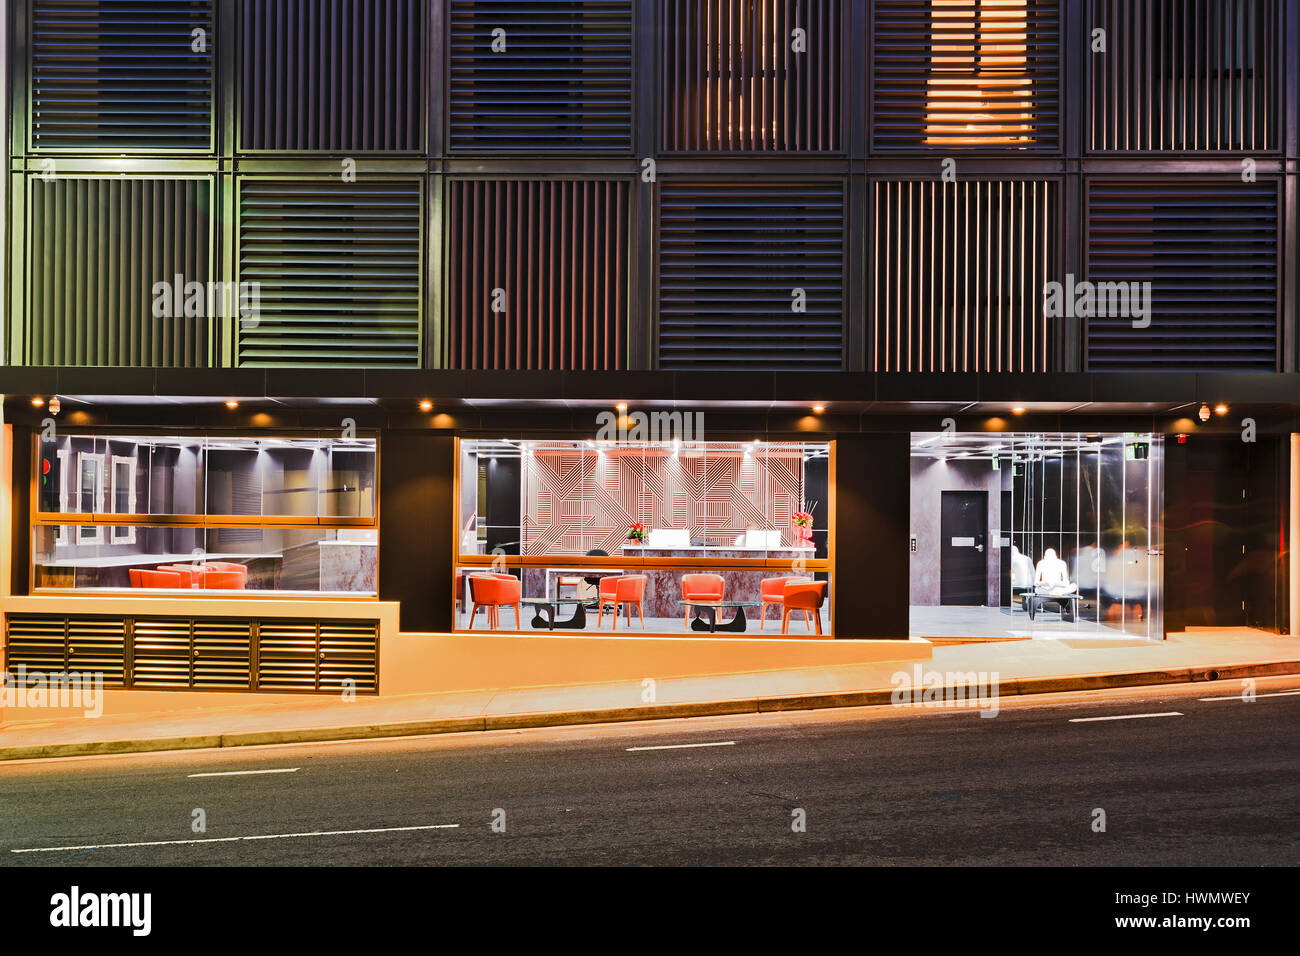 Sydney, Australien 18.02.2017 - modernes Hostel in Top Ryde Sydney bei Nacht mit heller Beleuchtung der Empfangsbereich durch Glasfenster und Türen Stockfoto